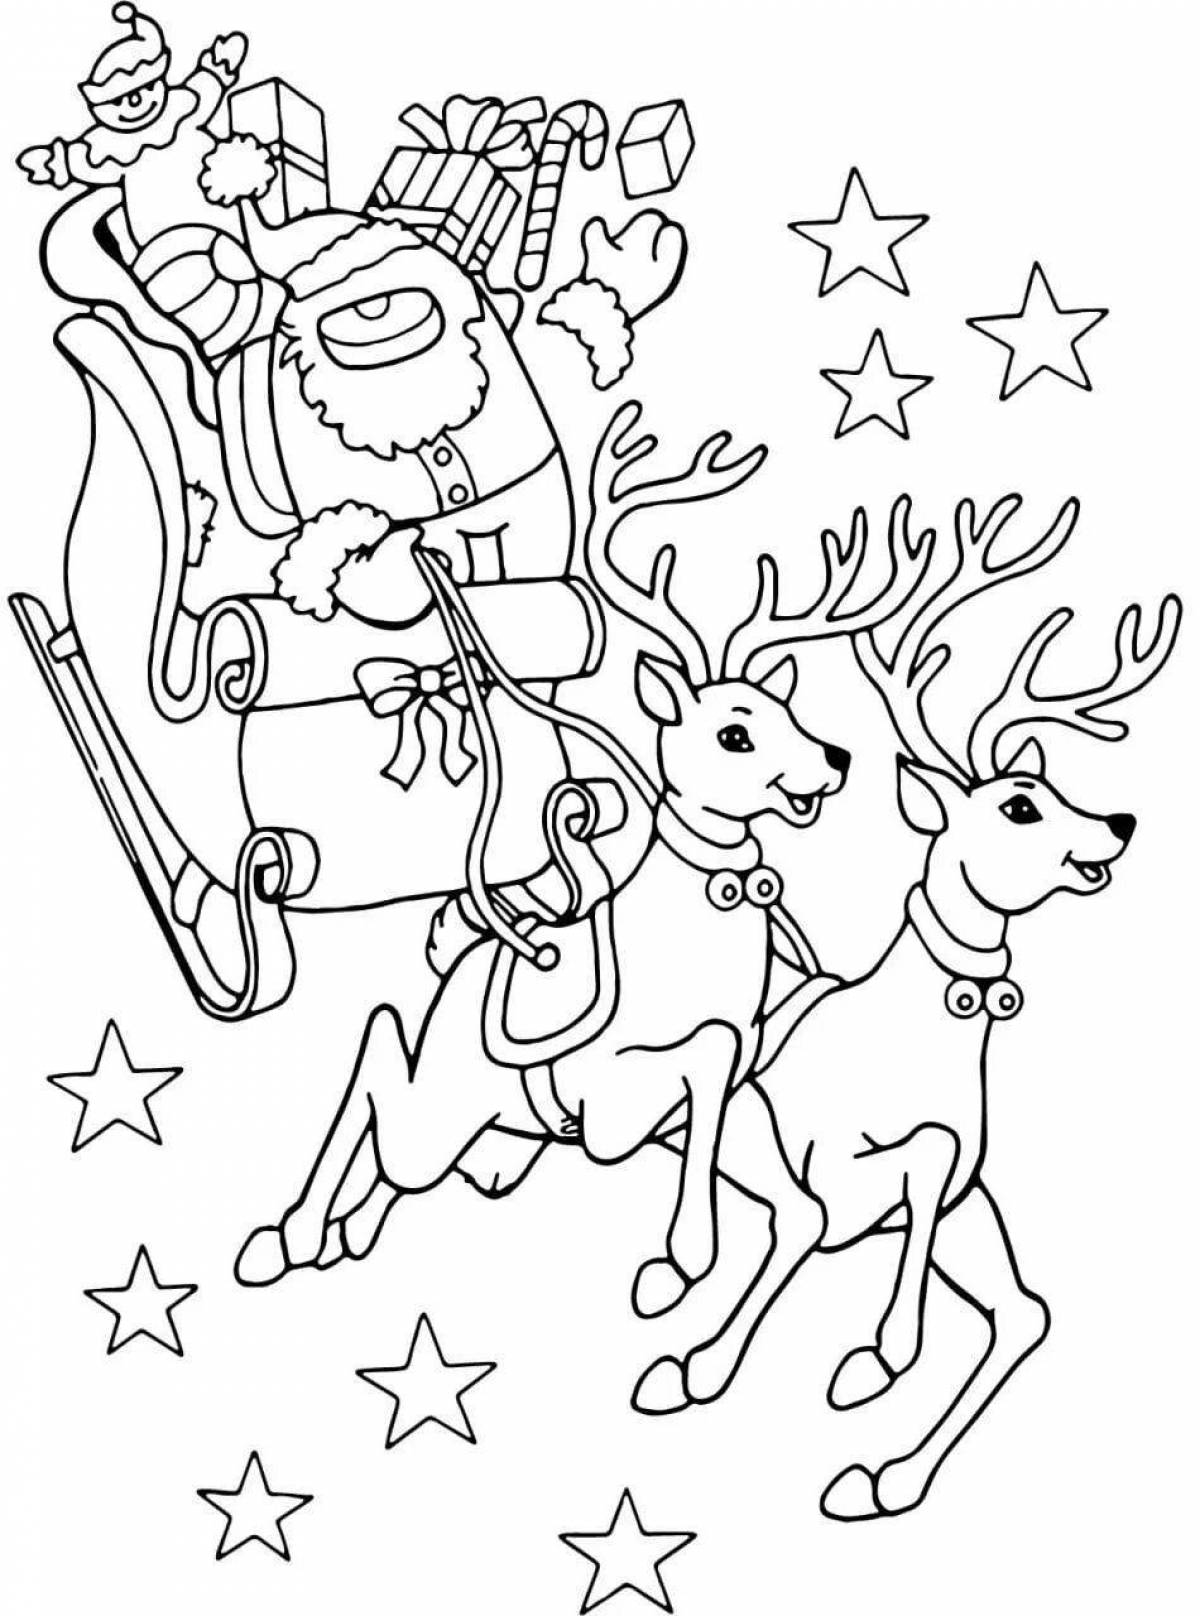 Coloring book magical Christmas deer